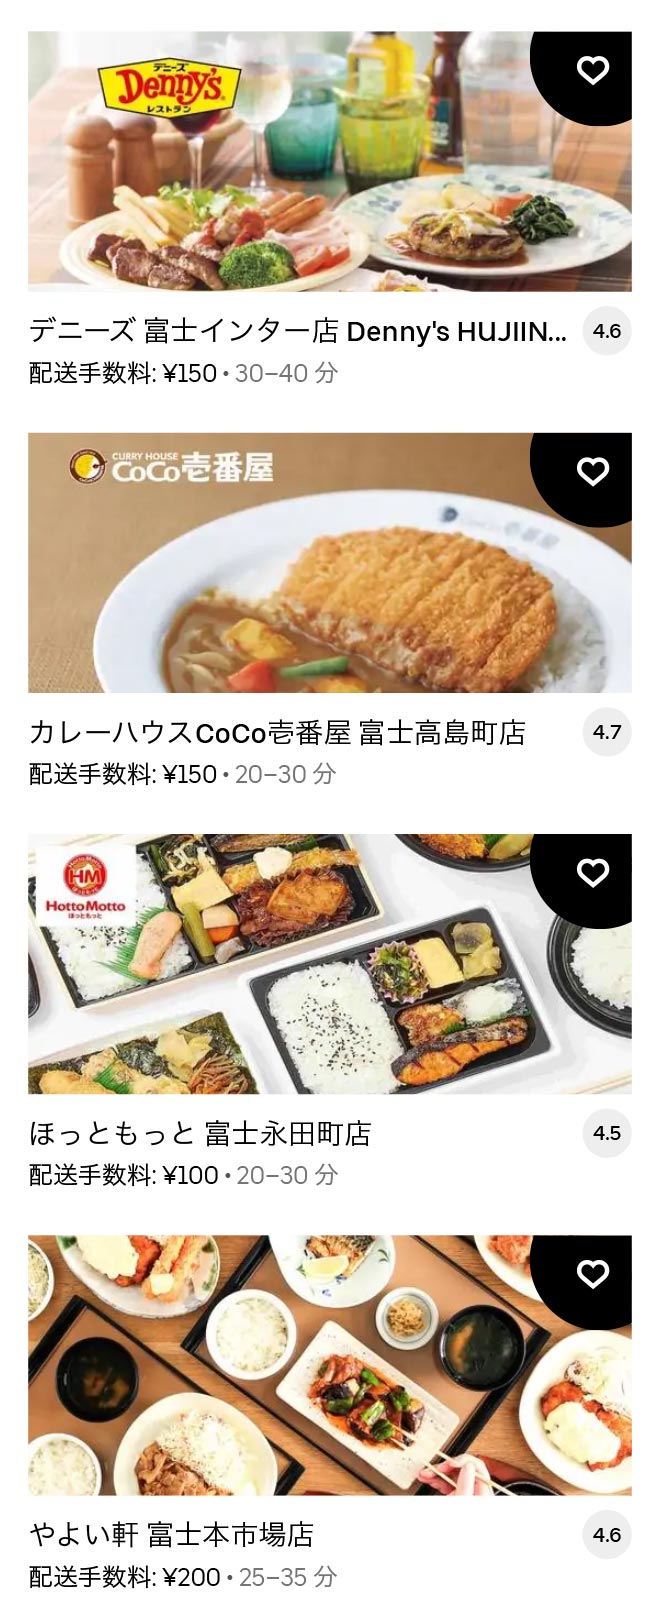 U yoshiwara menu 2104 04